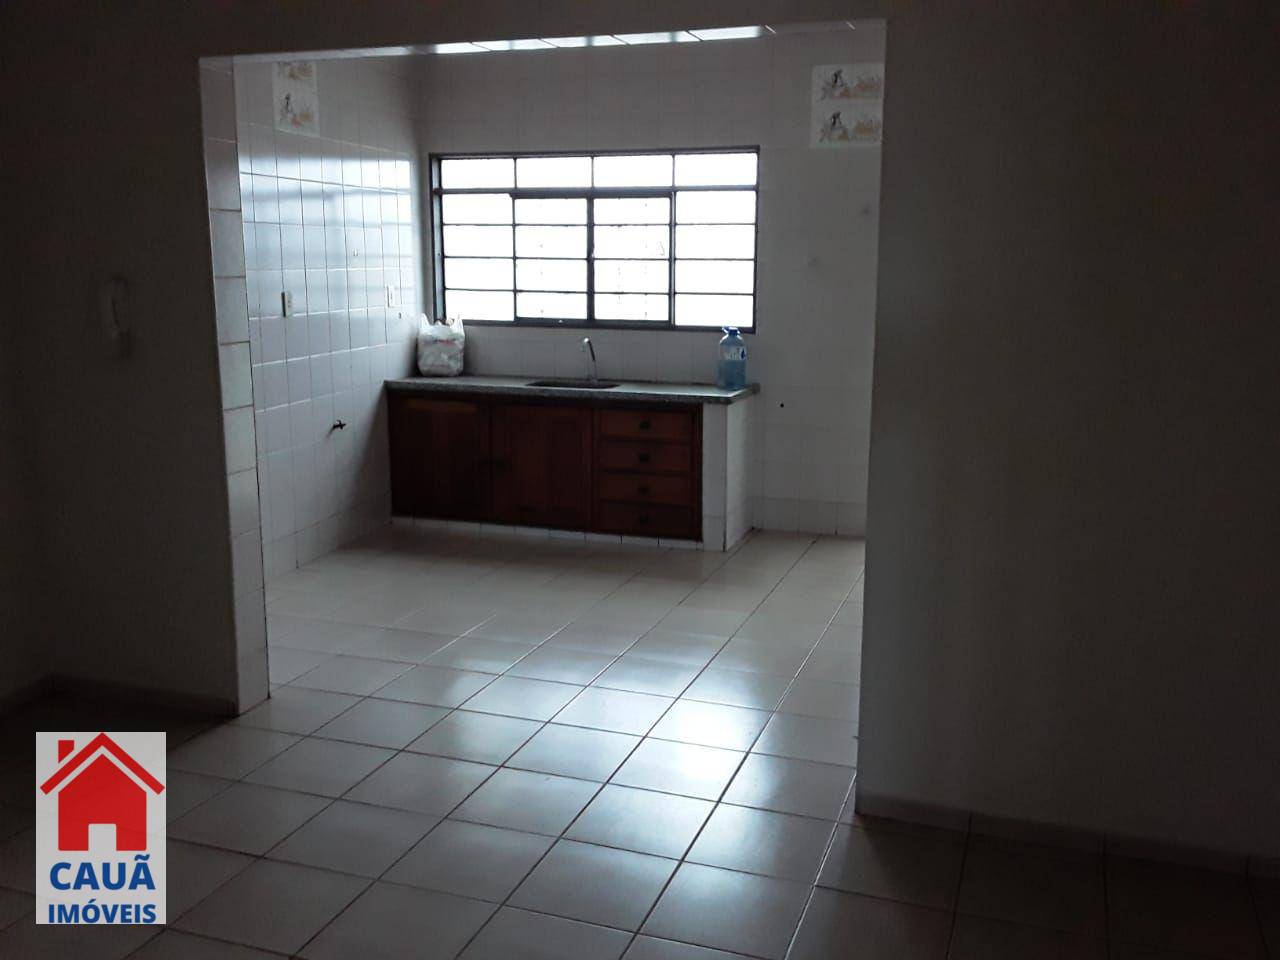 Apartamento, 3 quartos, 124 m² - Foto 2